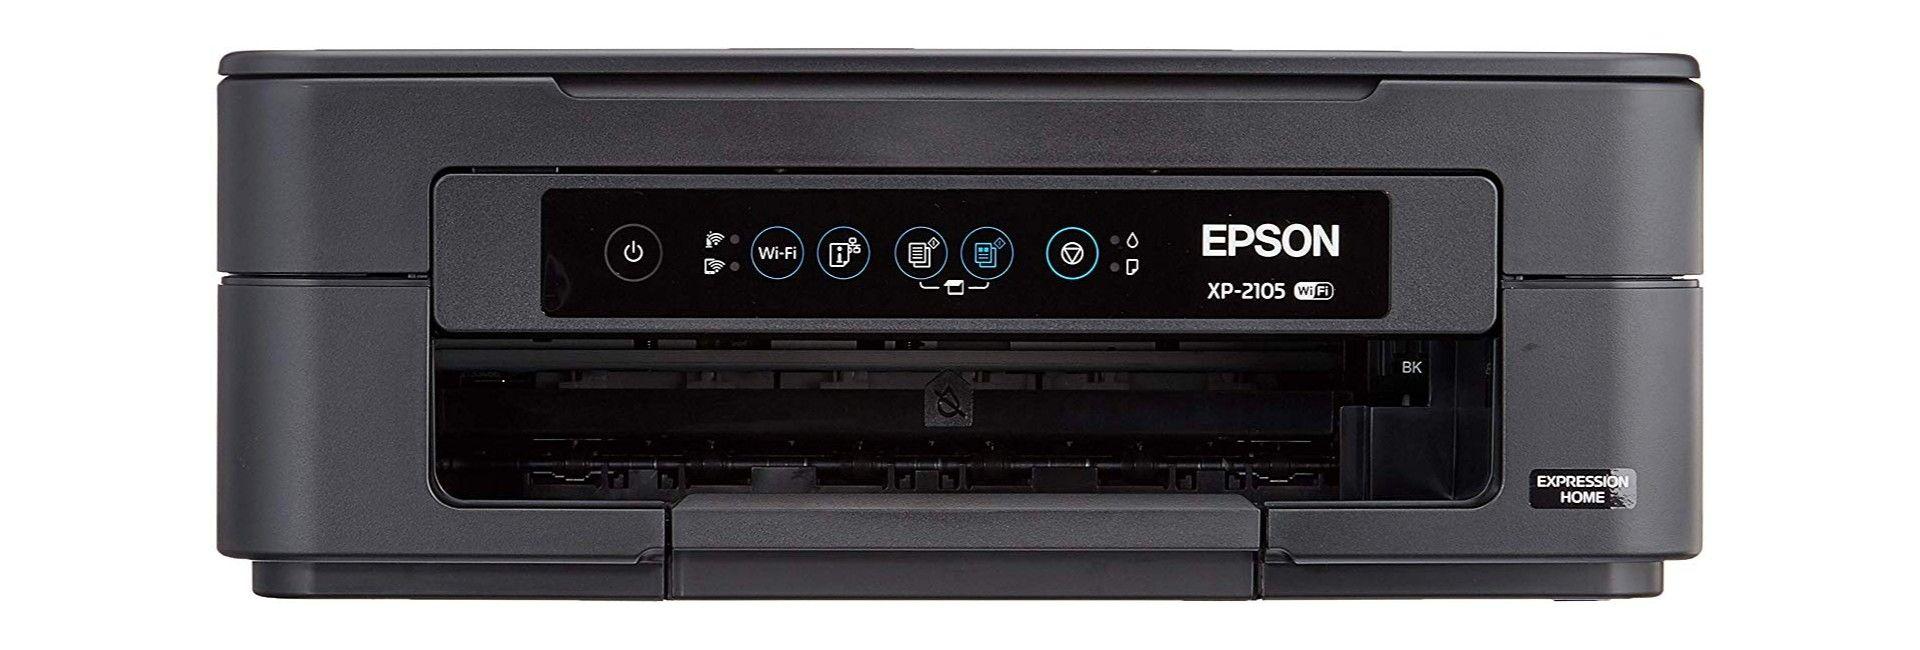 Imprimante jet d'encre Epson XP 2105 - Imprimante